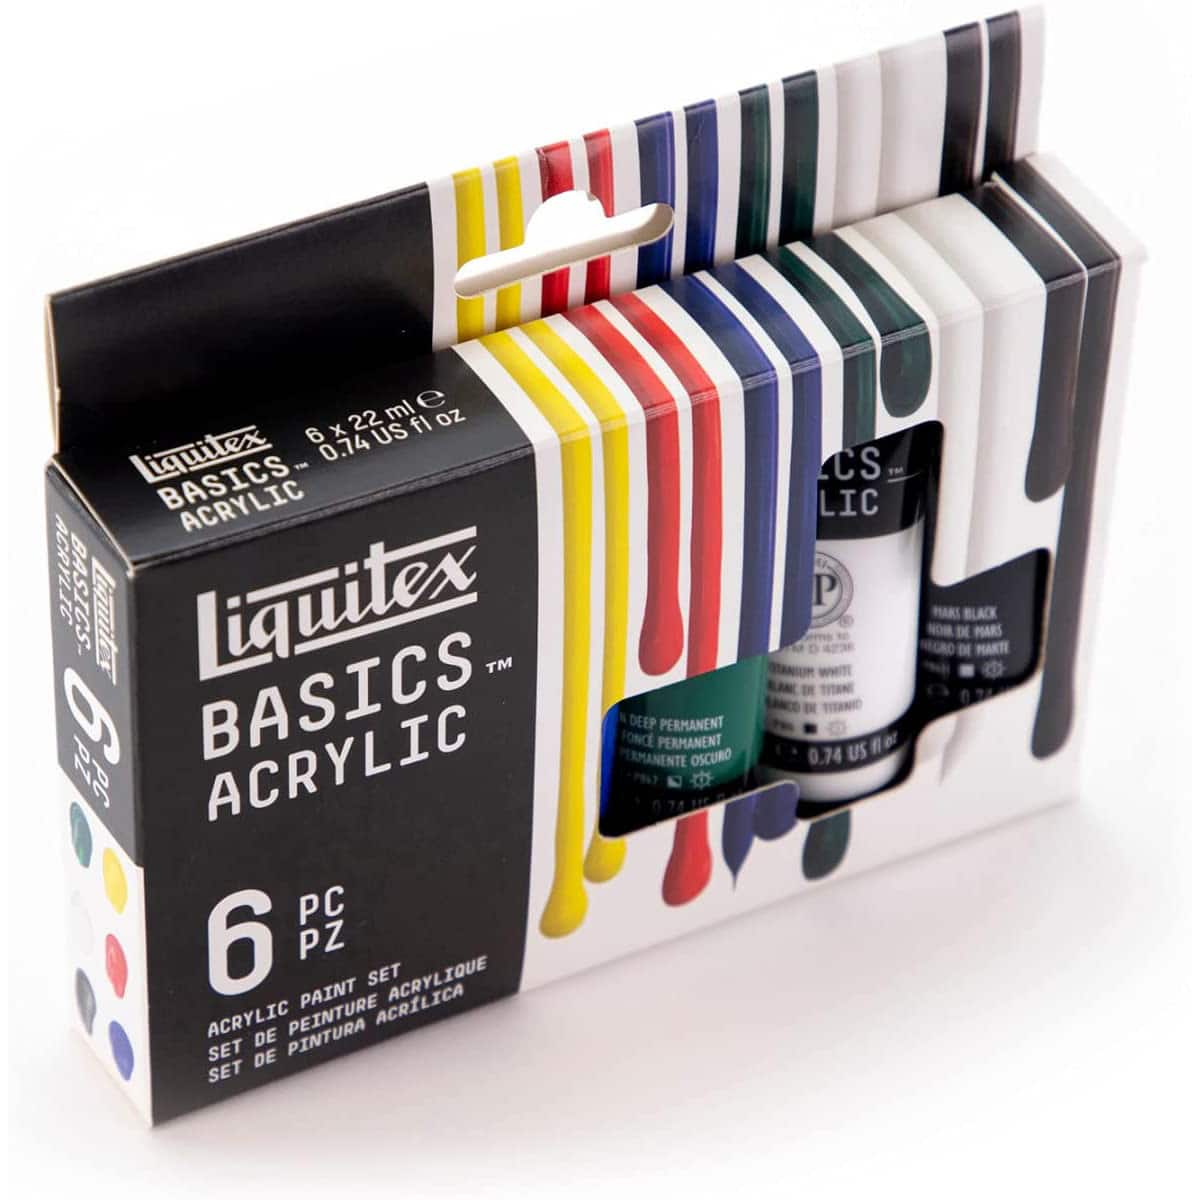 Liquitex Basics 6 couleurs de peinture acrylique